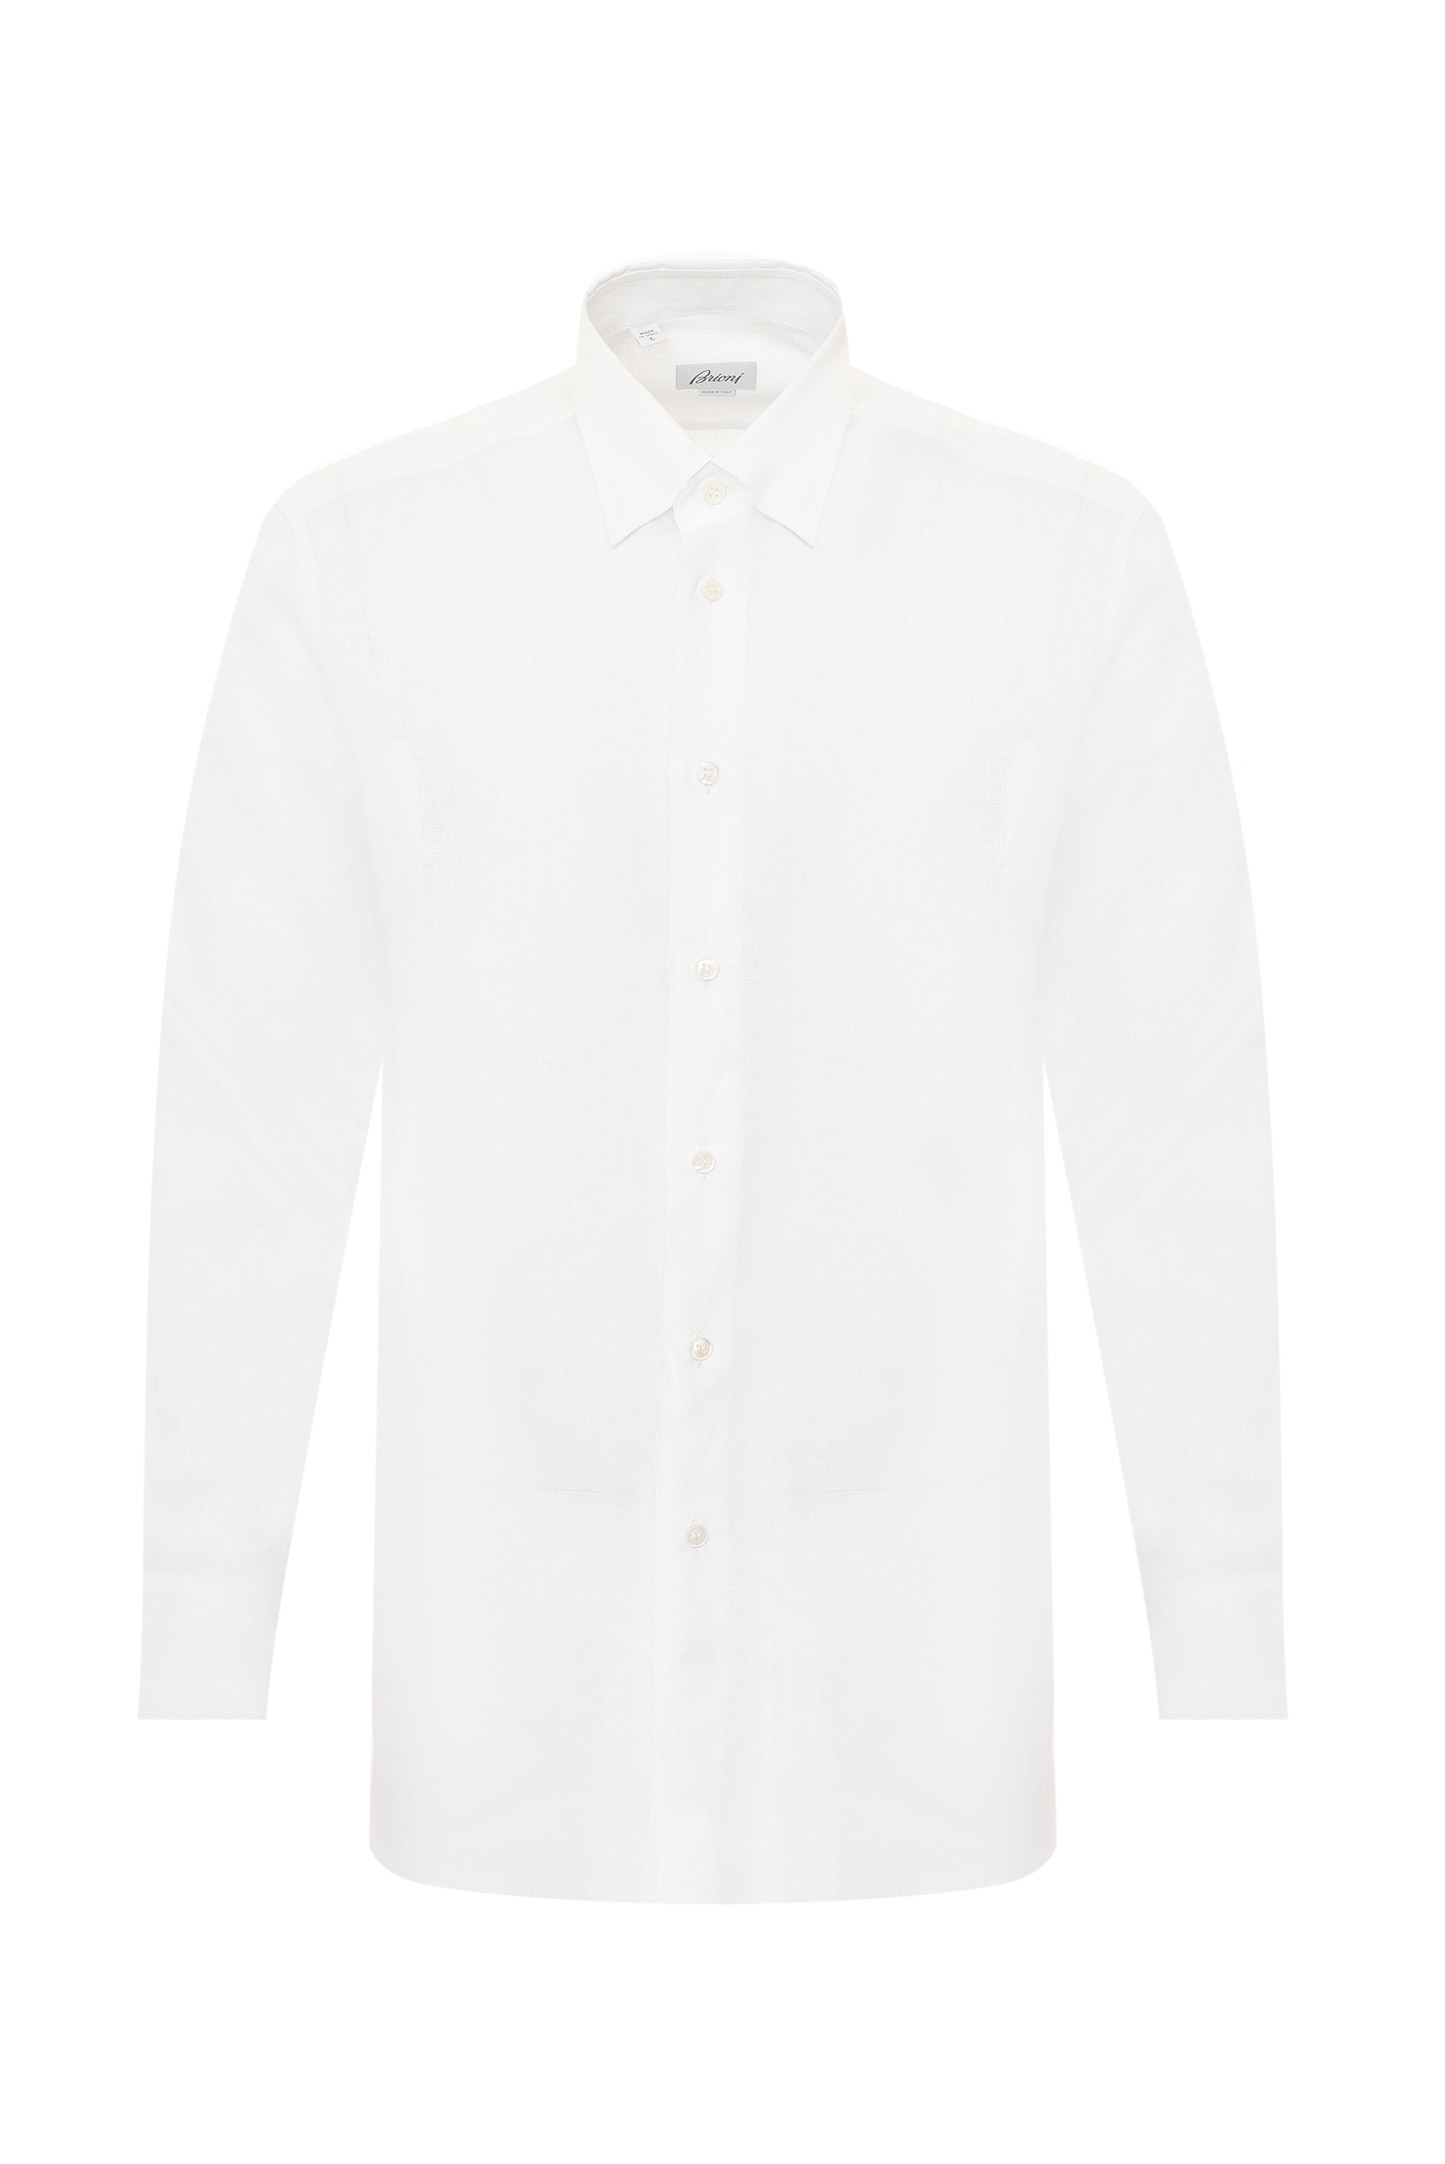 Рубашка BRIONI SCAY0L P9111, цвет: Белый, Мужской